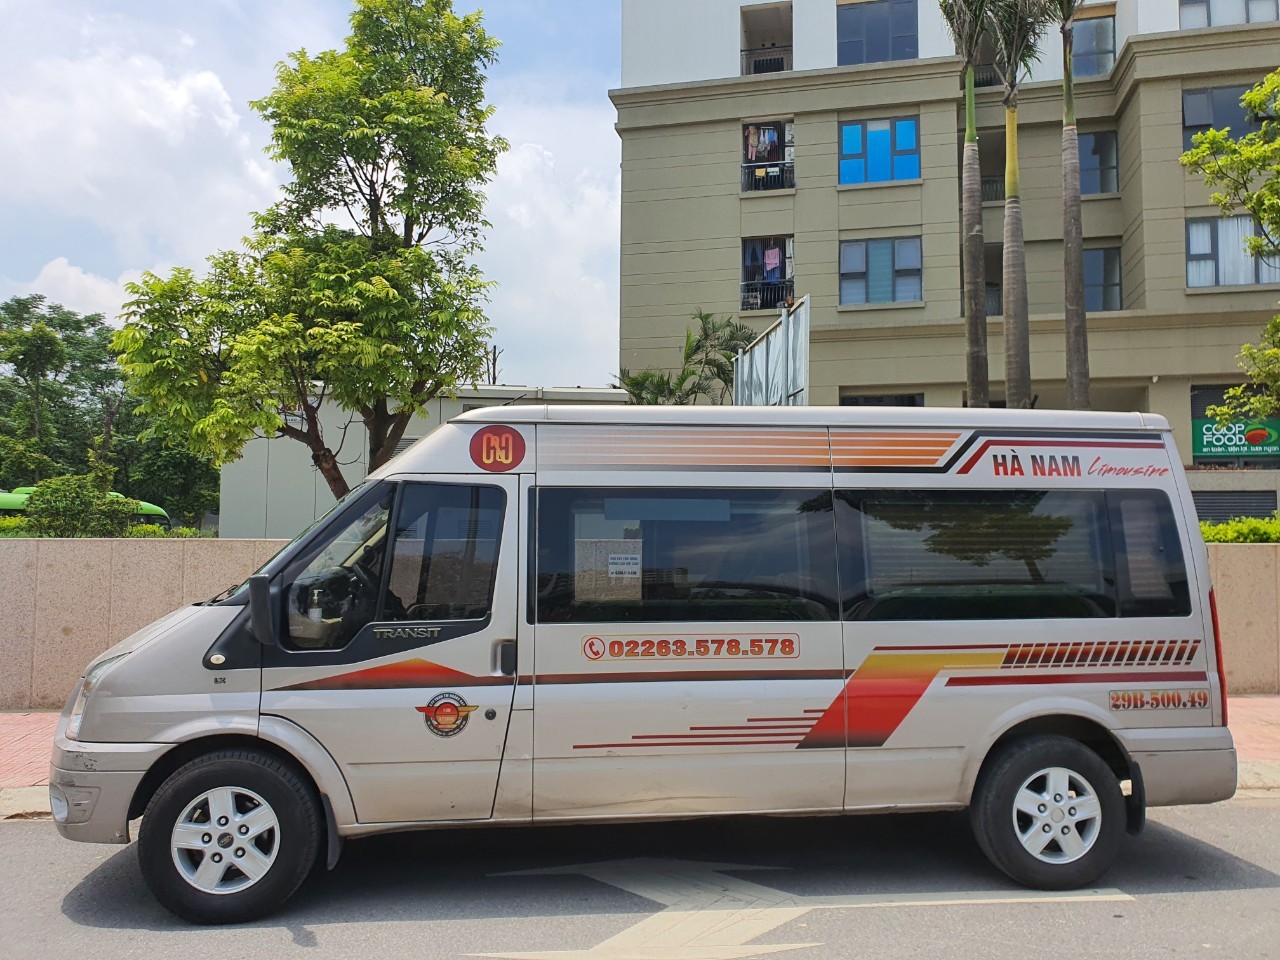 Top 20 Nhà xe limousine Hà Nội Hà Nam - Phủ Lý đi Mỹ Đình tốt nhất